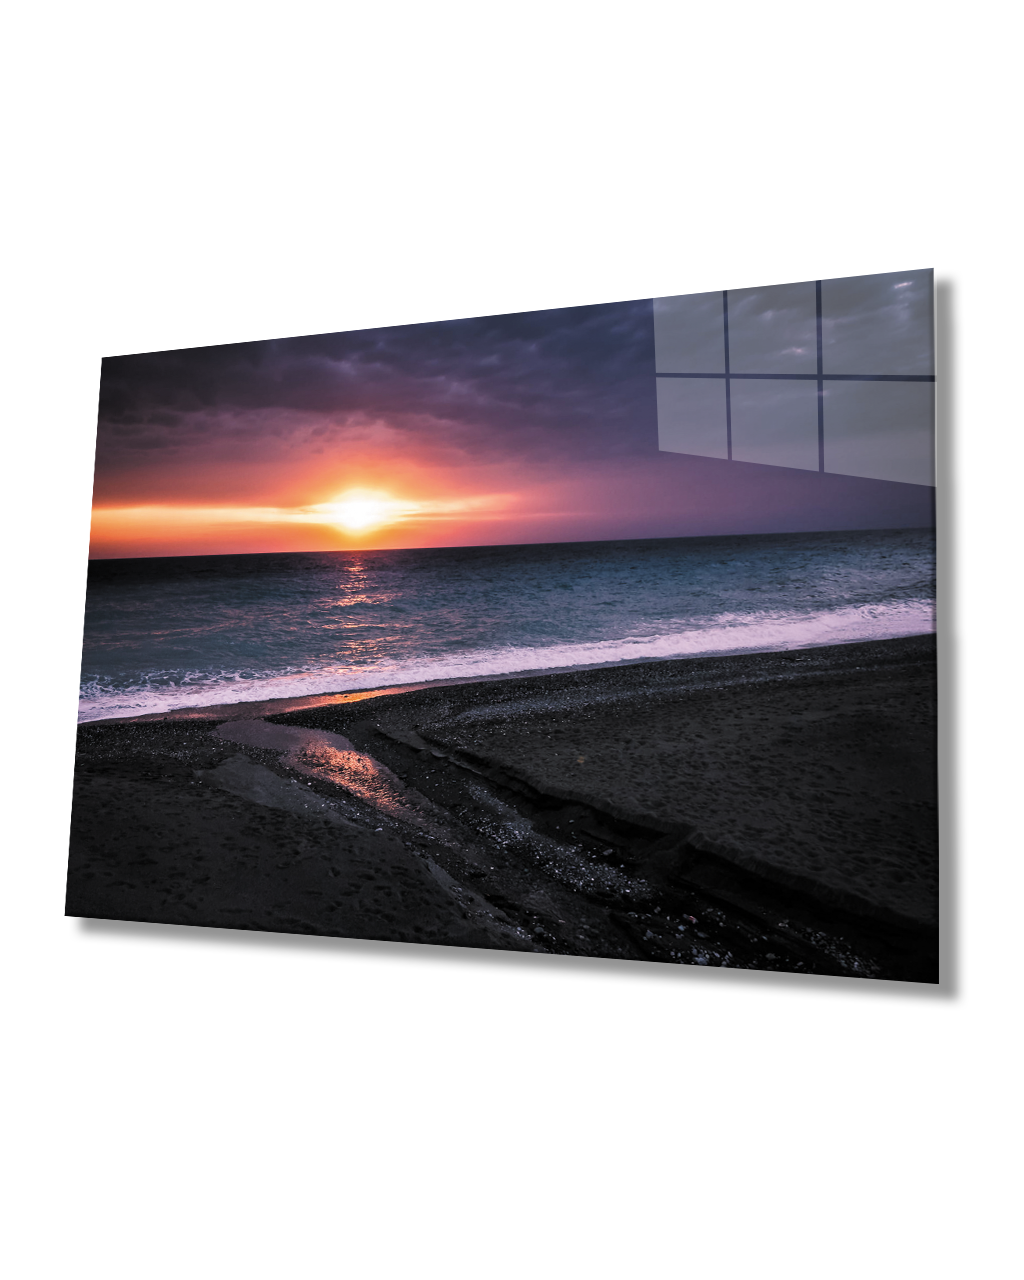 Gün Batımı Sahil Cam Tablo  4mm Dayanıklı Temperli Cam Sunset Beach Glass Table 4mm Durable Tempered Glass